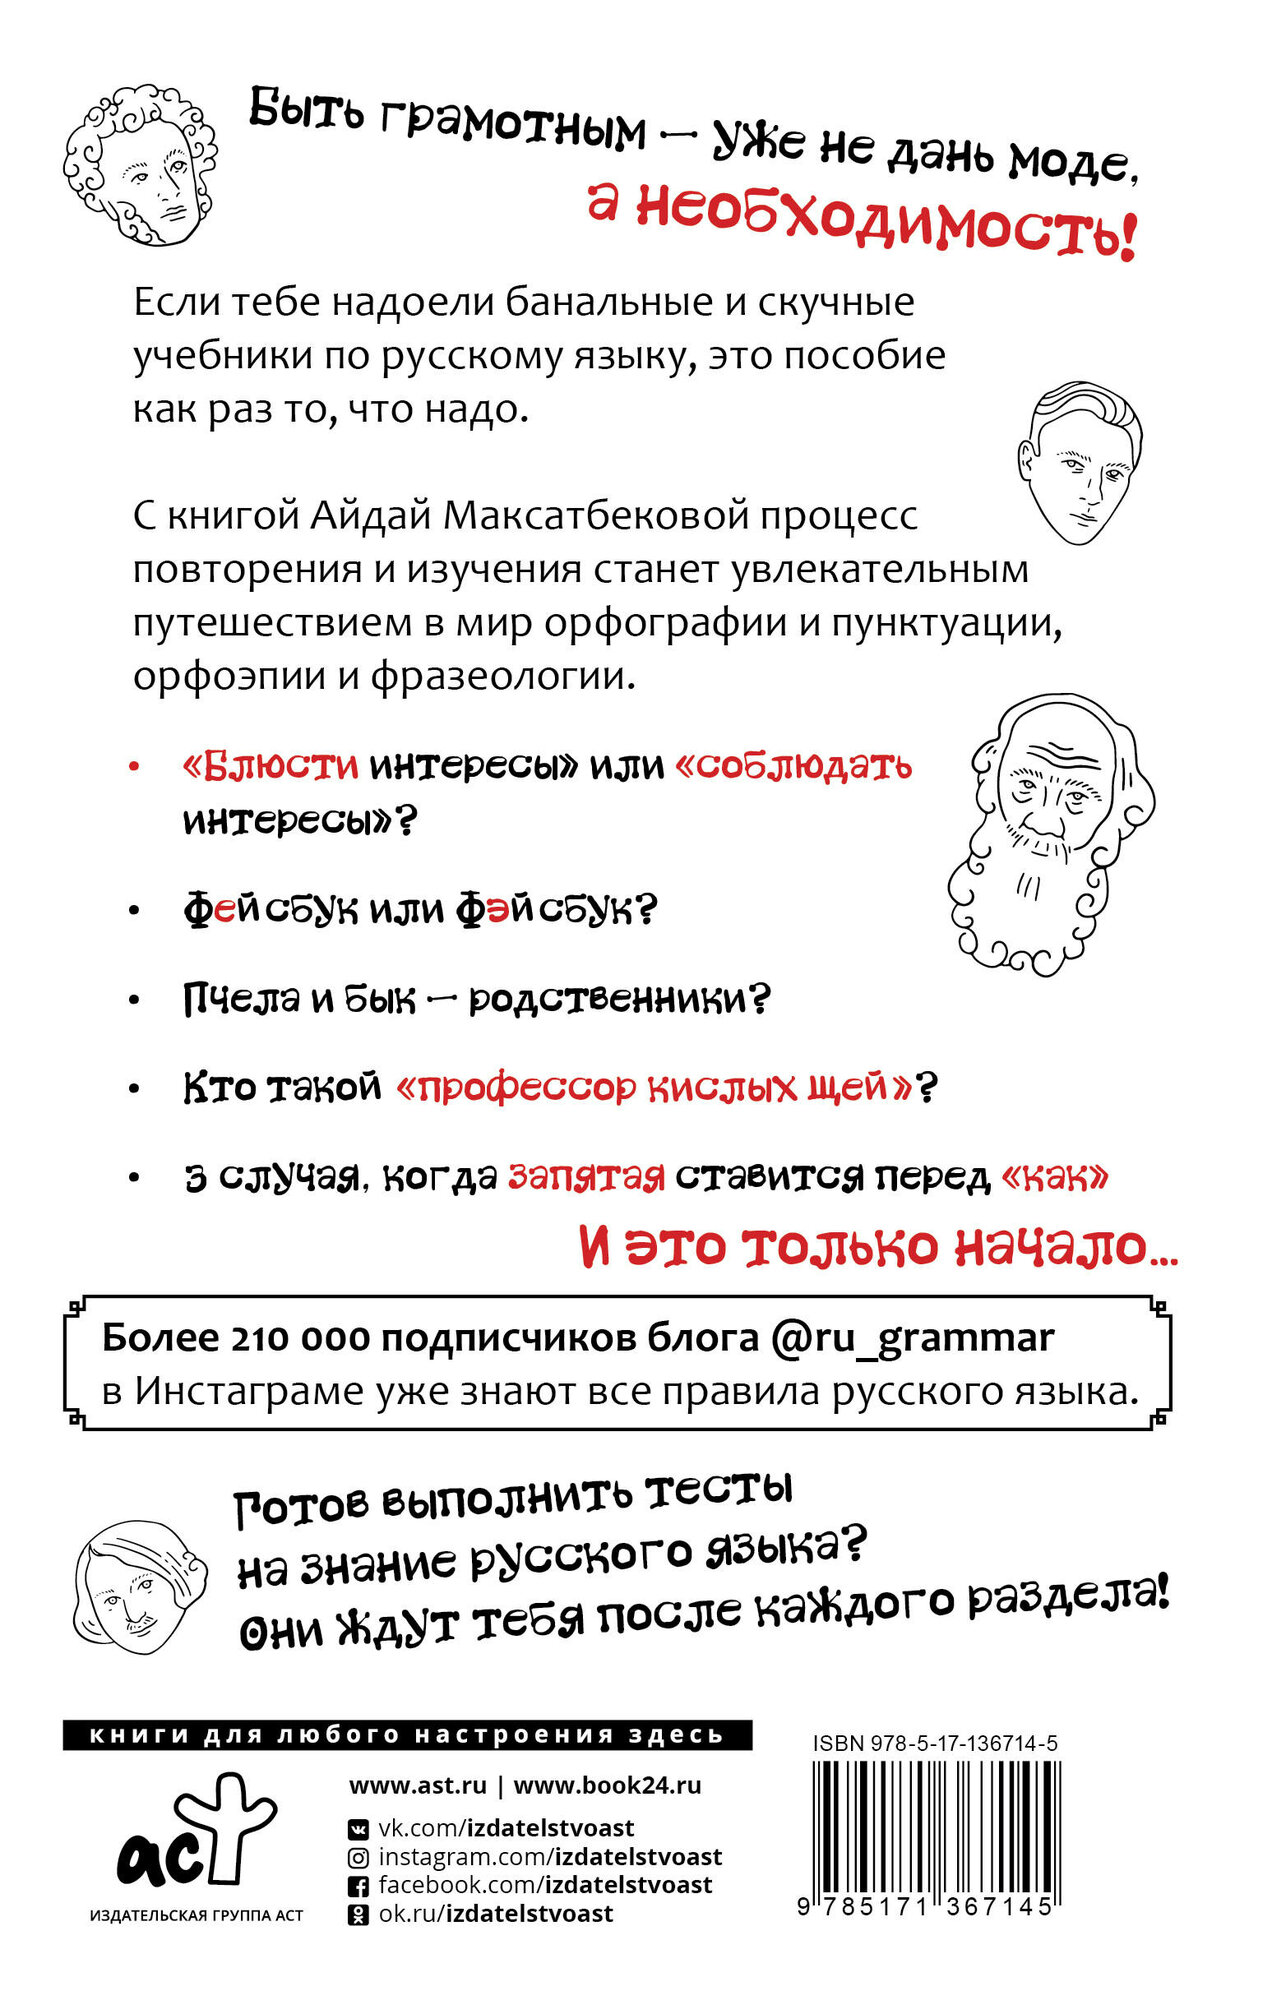 Все правила современного русского языка с примерами и разбором ошибок - фото №3